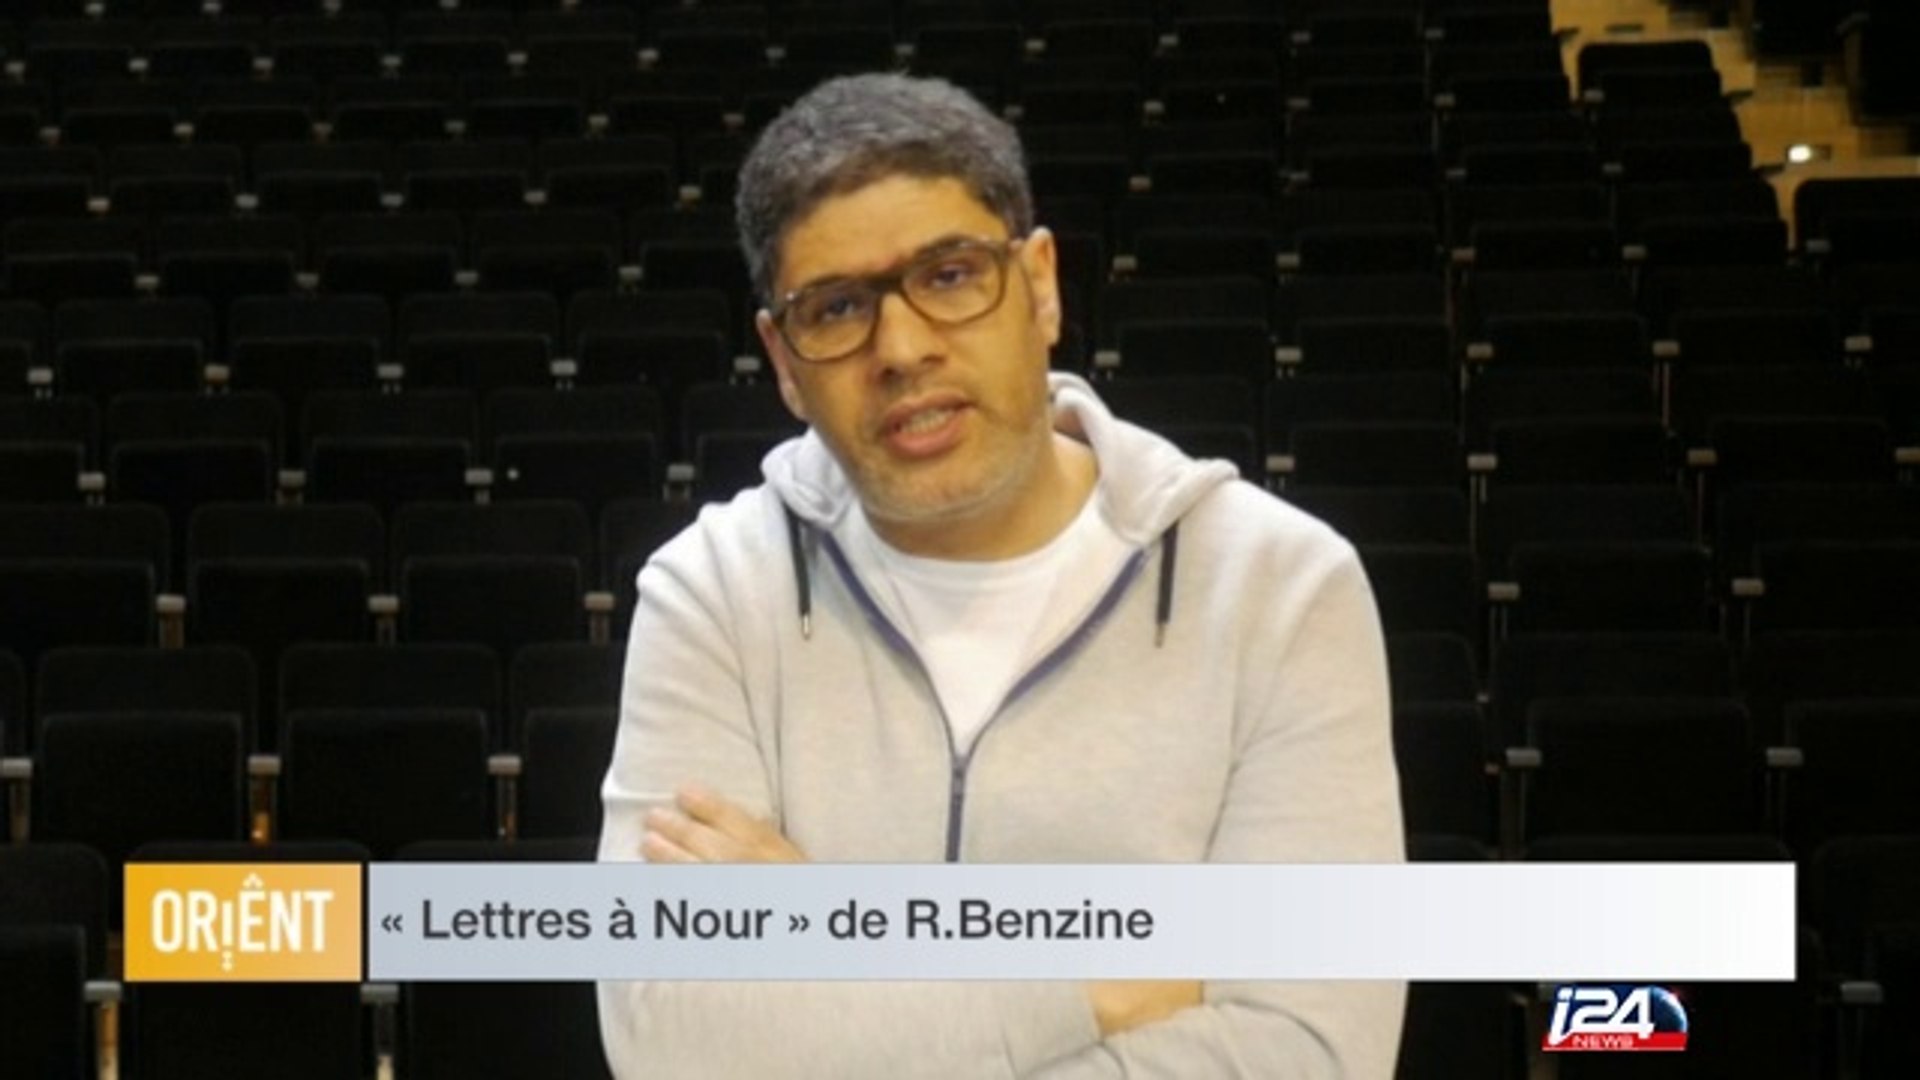 Lettres à Nour » de R.Benzine - 19/01/2017 - Vidéo Dailymotion